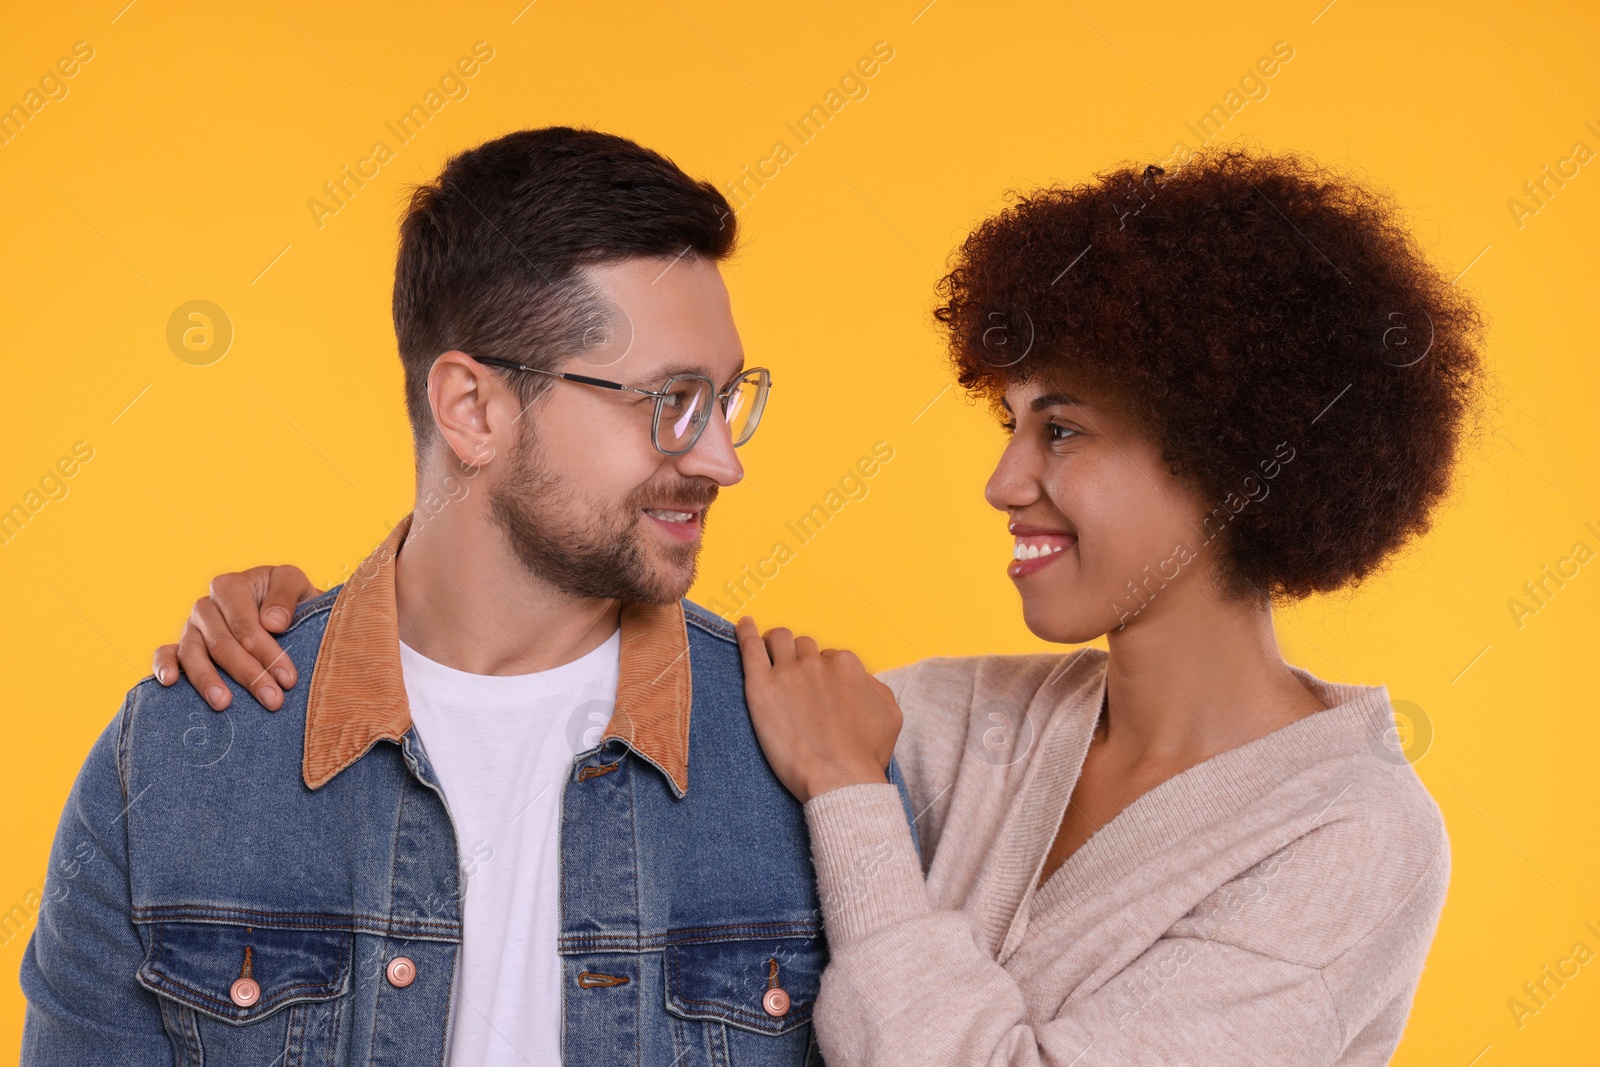 Photo of International dating. Portrait of happy couple on orange background